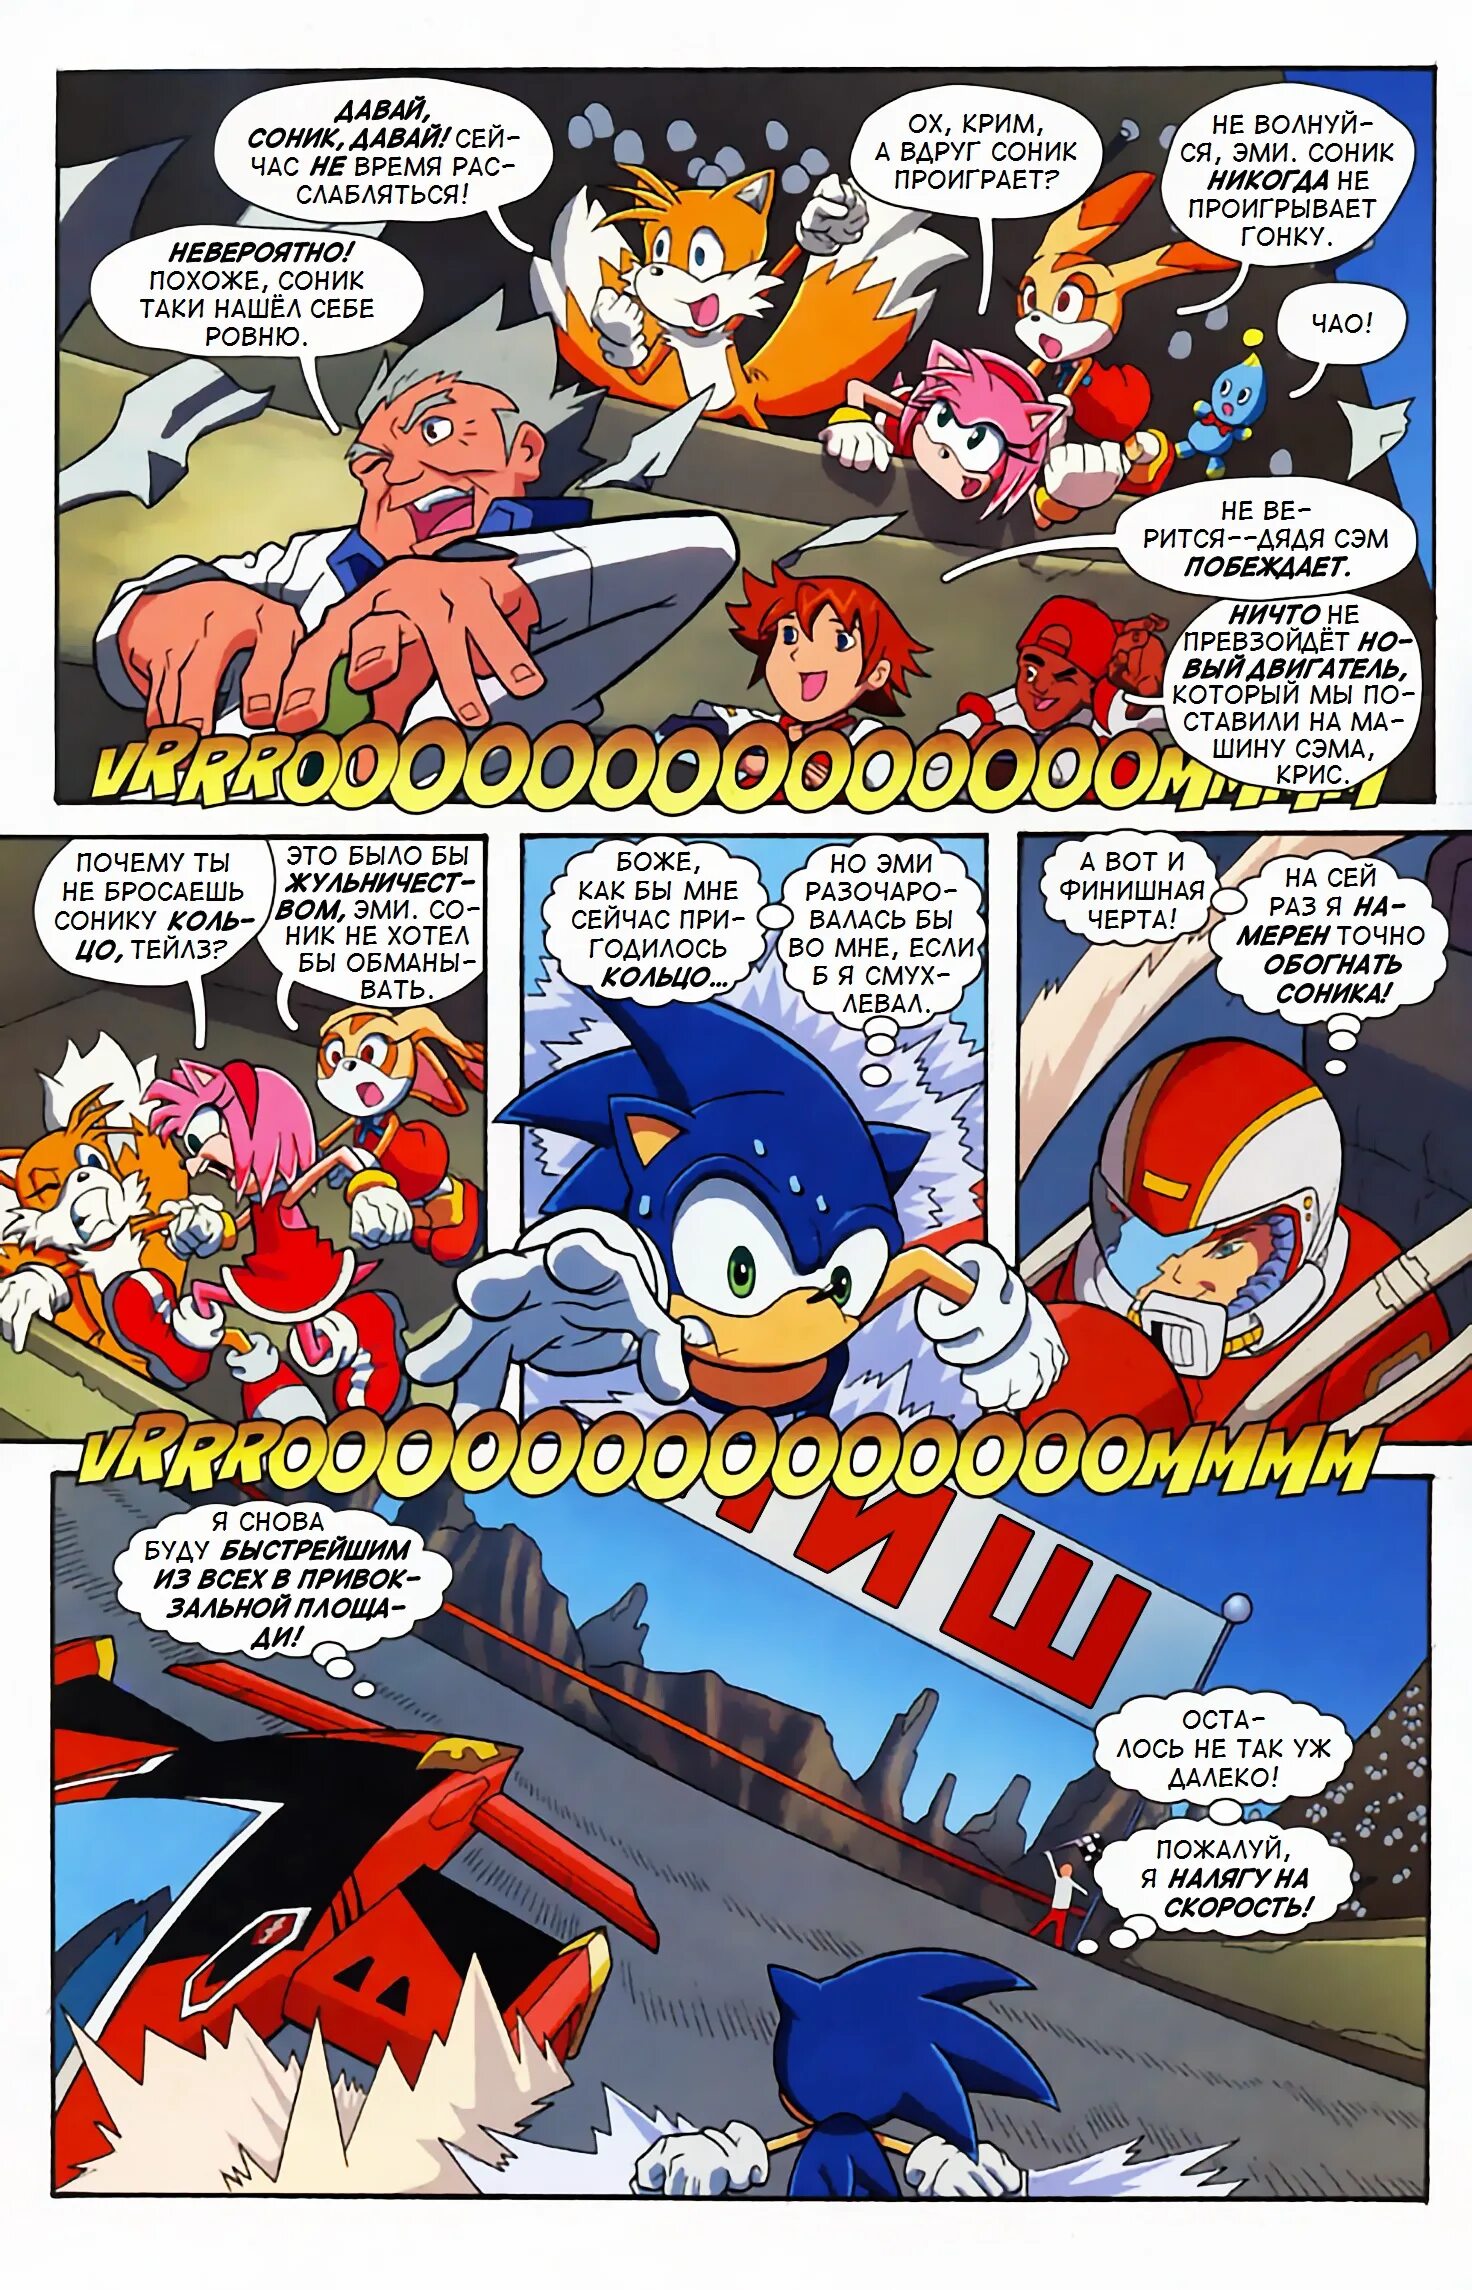 Комикс про Соника 1. Sonic комикс том 1. Комикс про Соника том 1. Соник комиксы Арчи. Читать соник комикс том